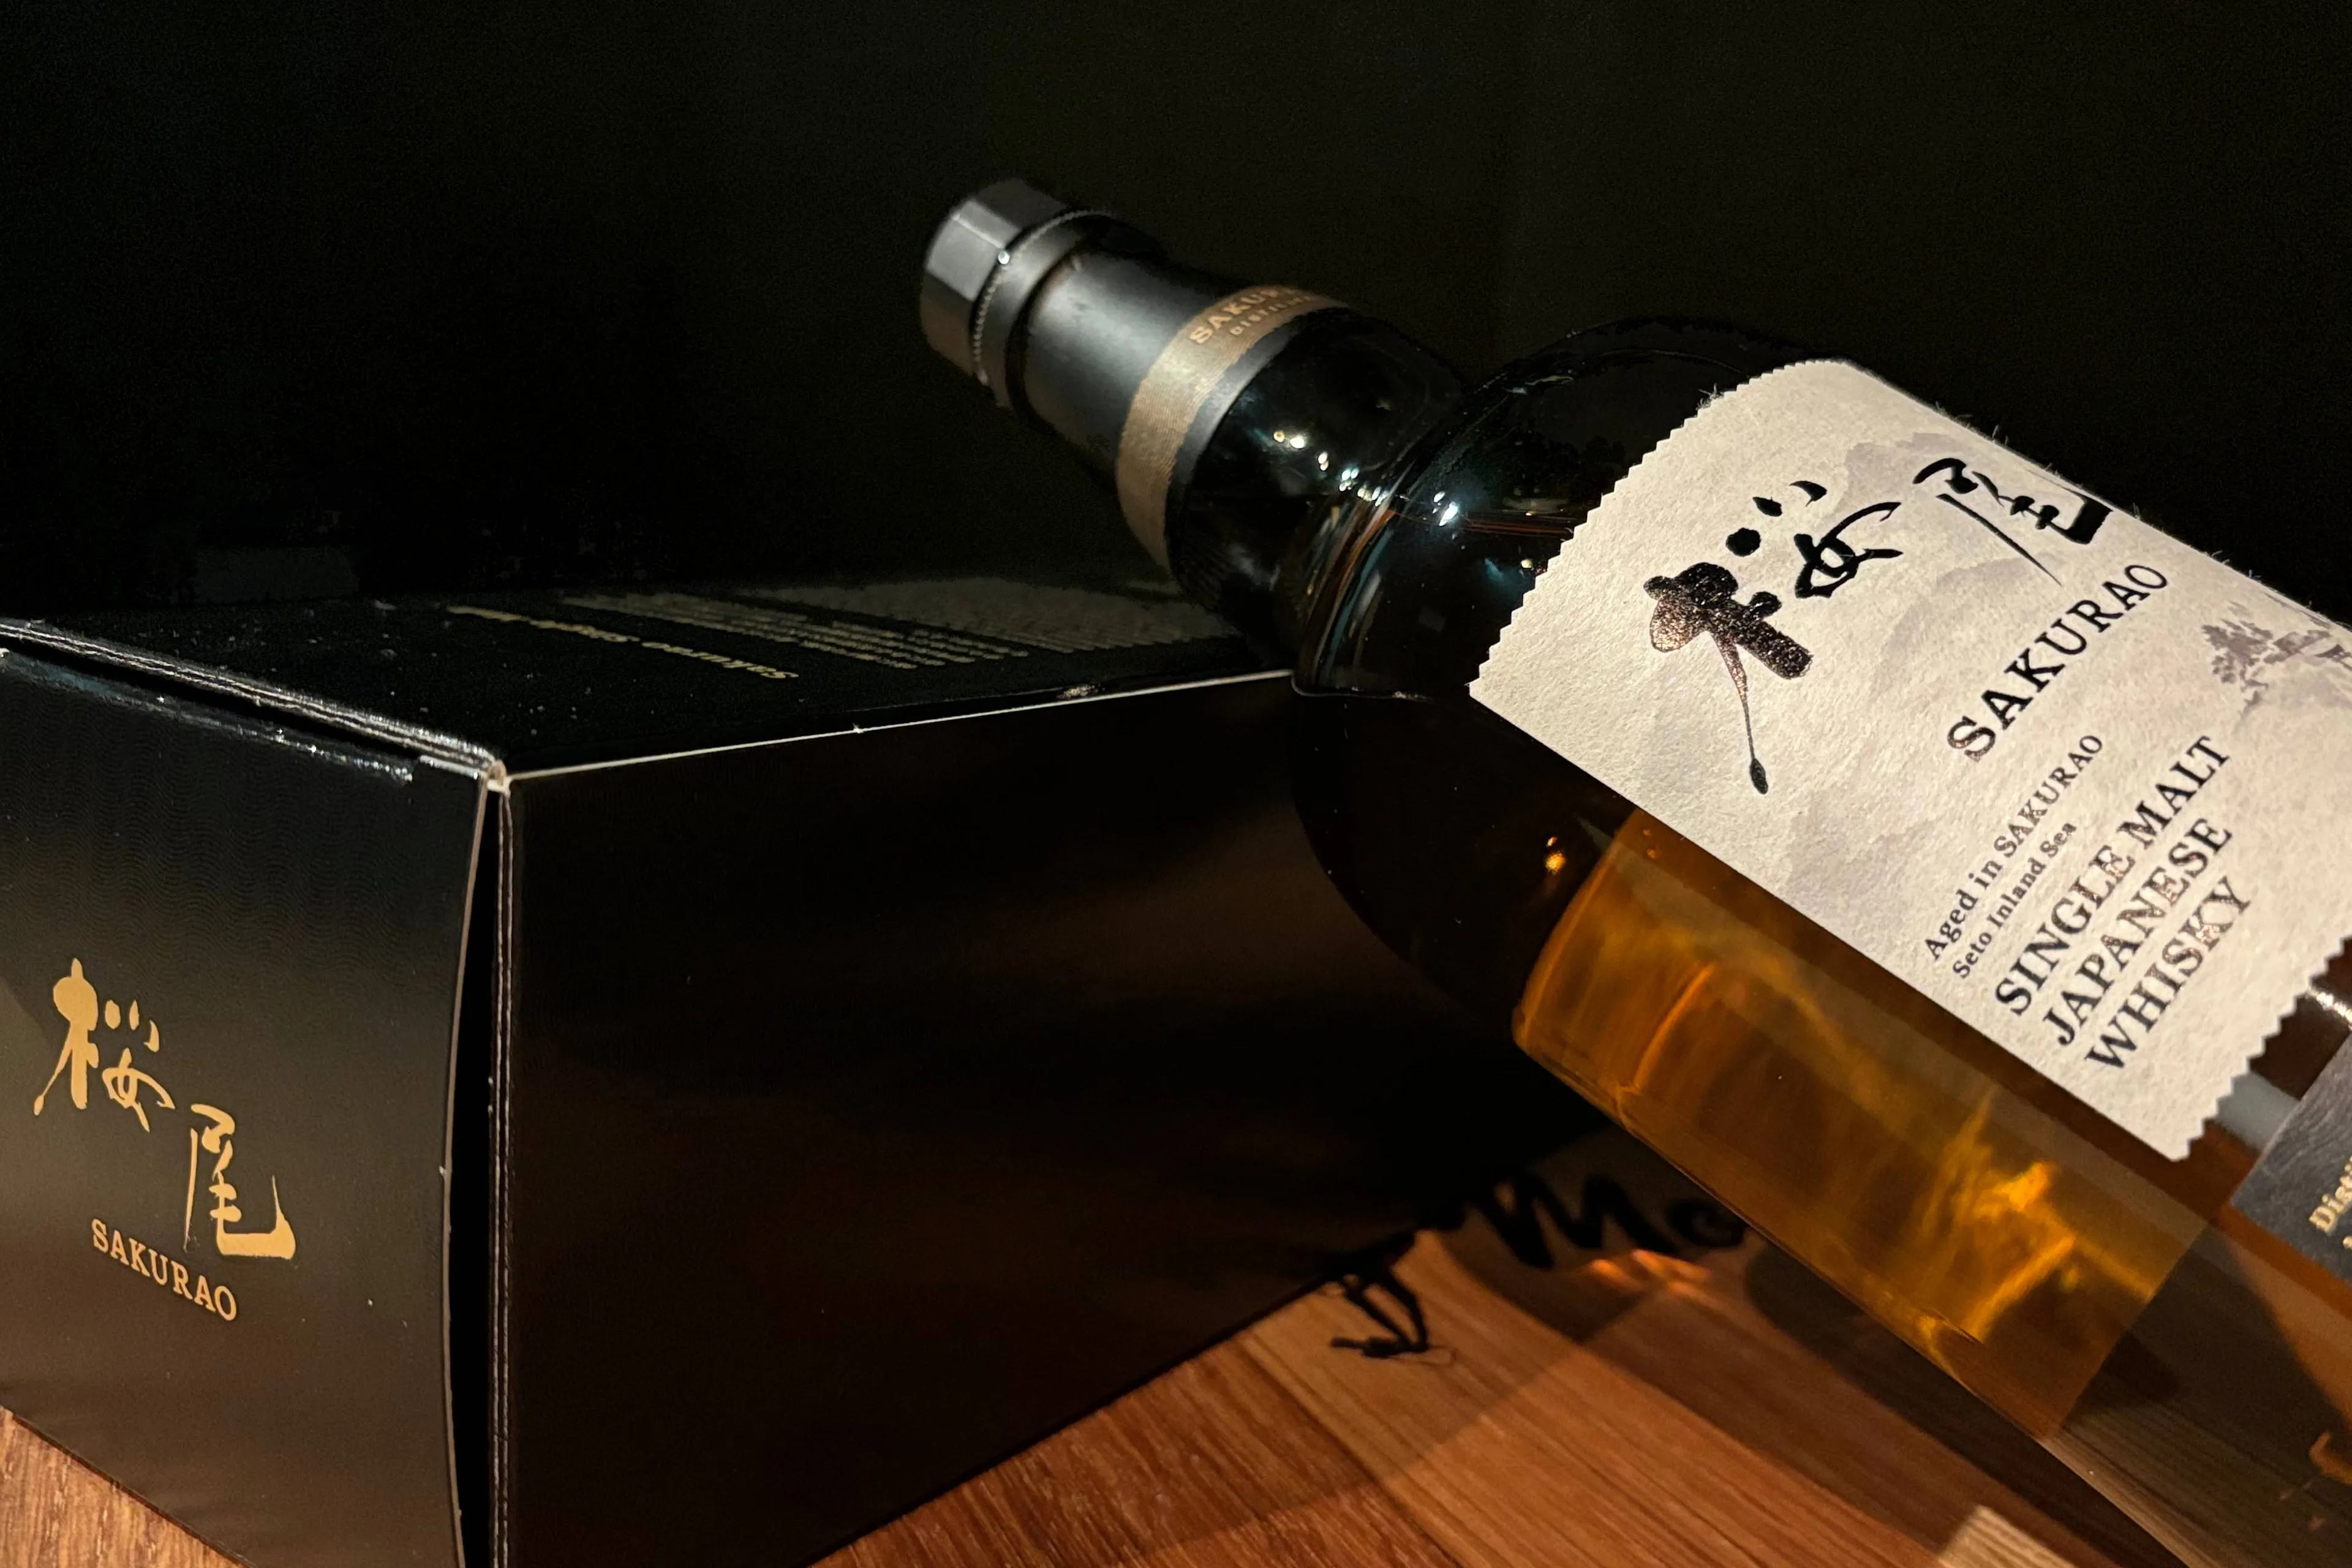 sakurao single malt whisky monkeys 3 1